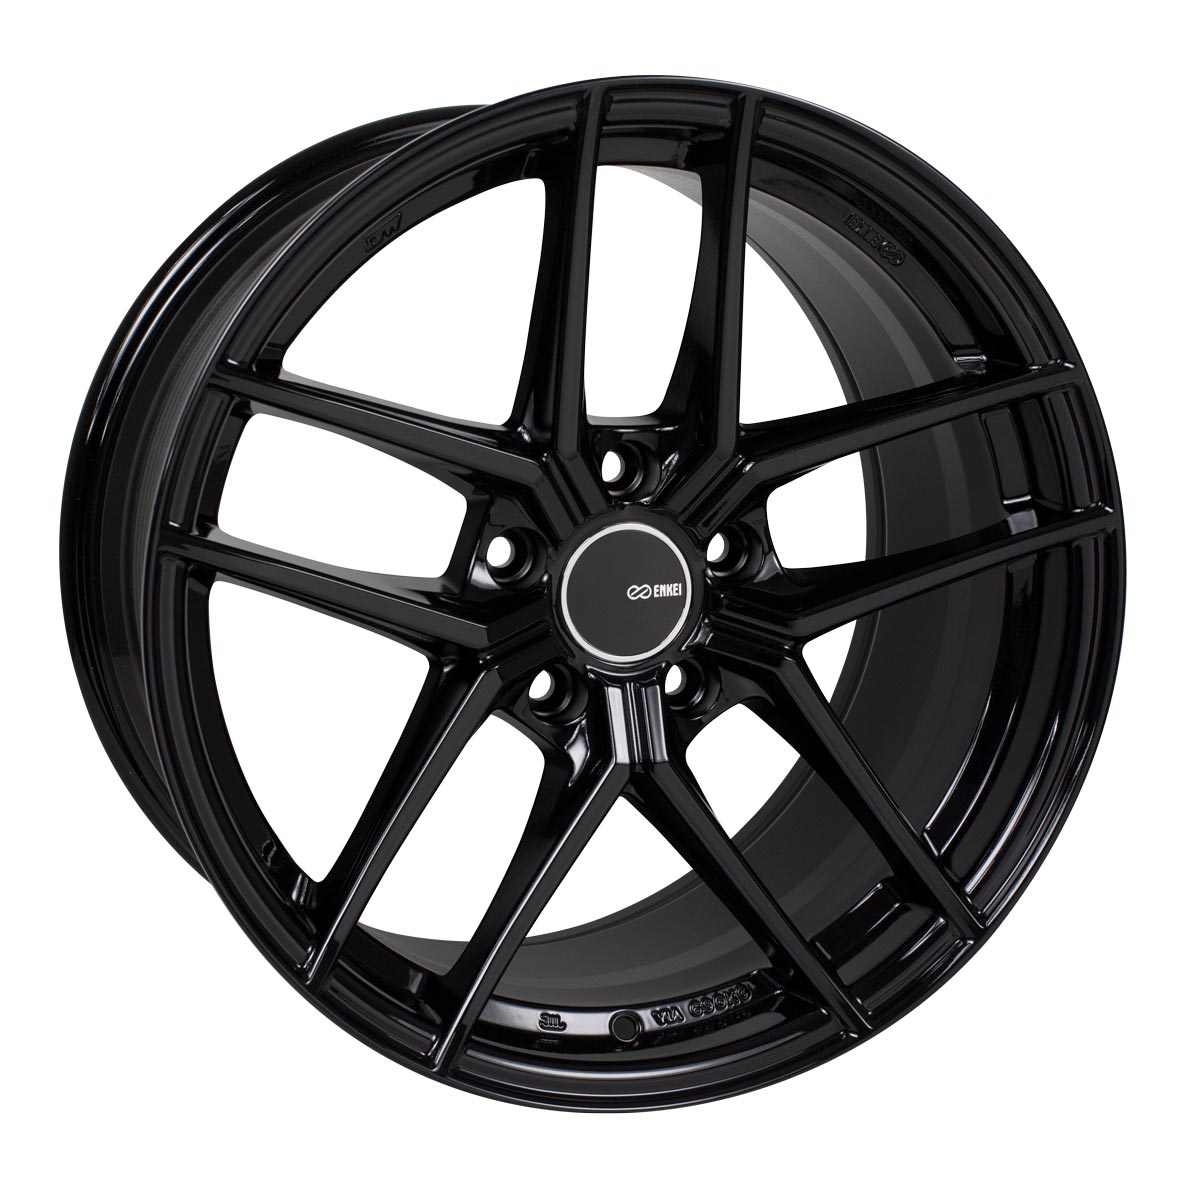 Enkei TY-5 Wheel Gloss Black 19x8.5 +50 5x114.3 498-985-6550BK